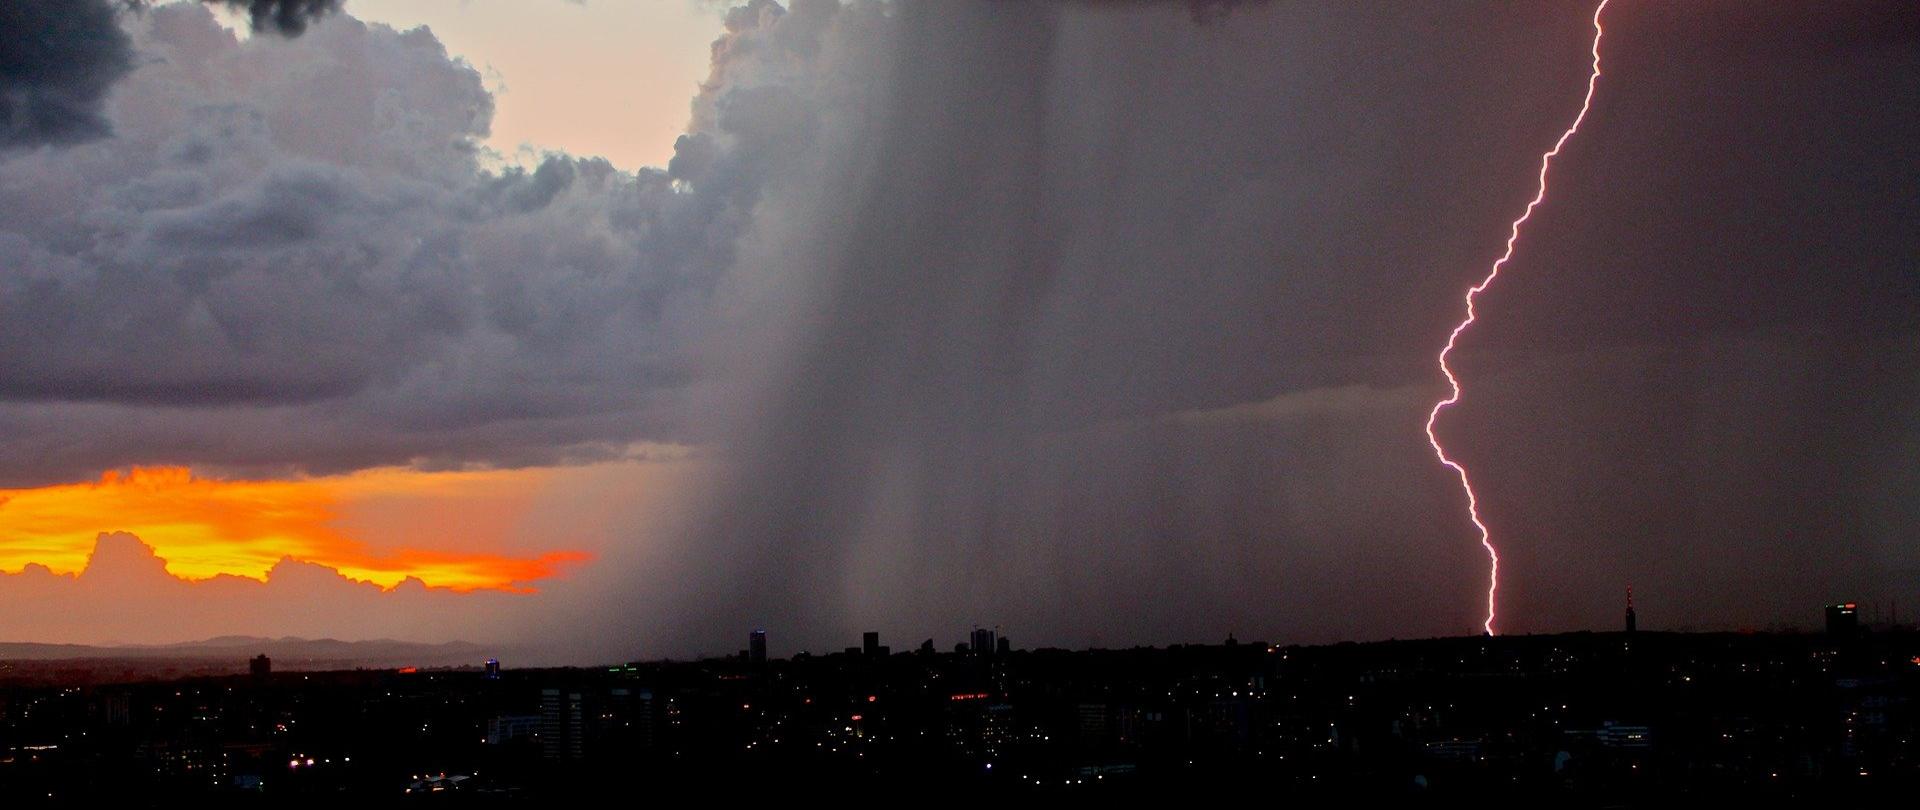 Zdjęcie przedstawia błyskawicę nad miastem i smugi podającego deszczu.